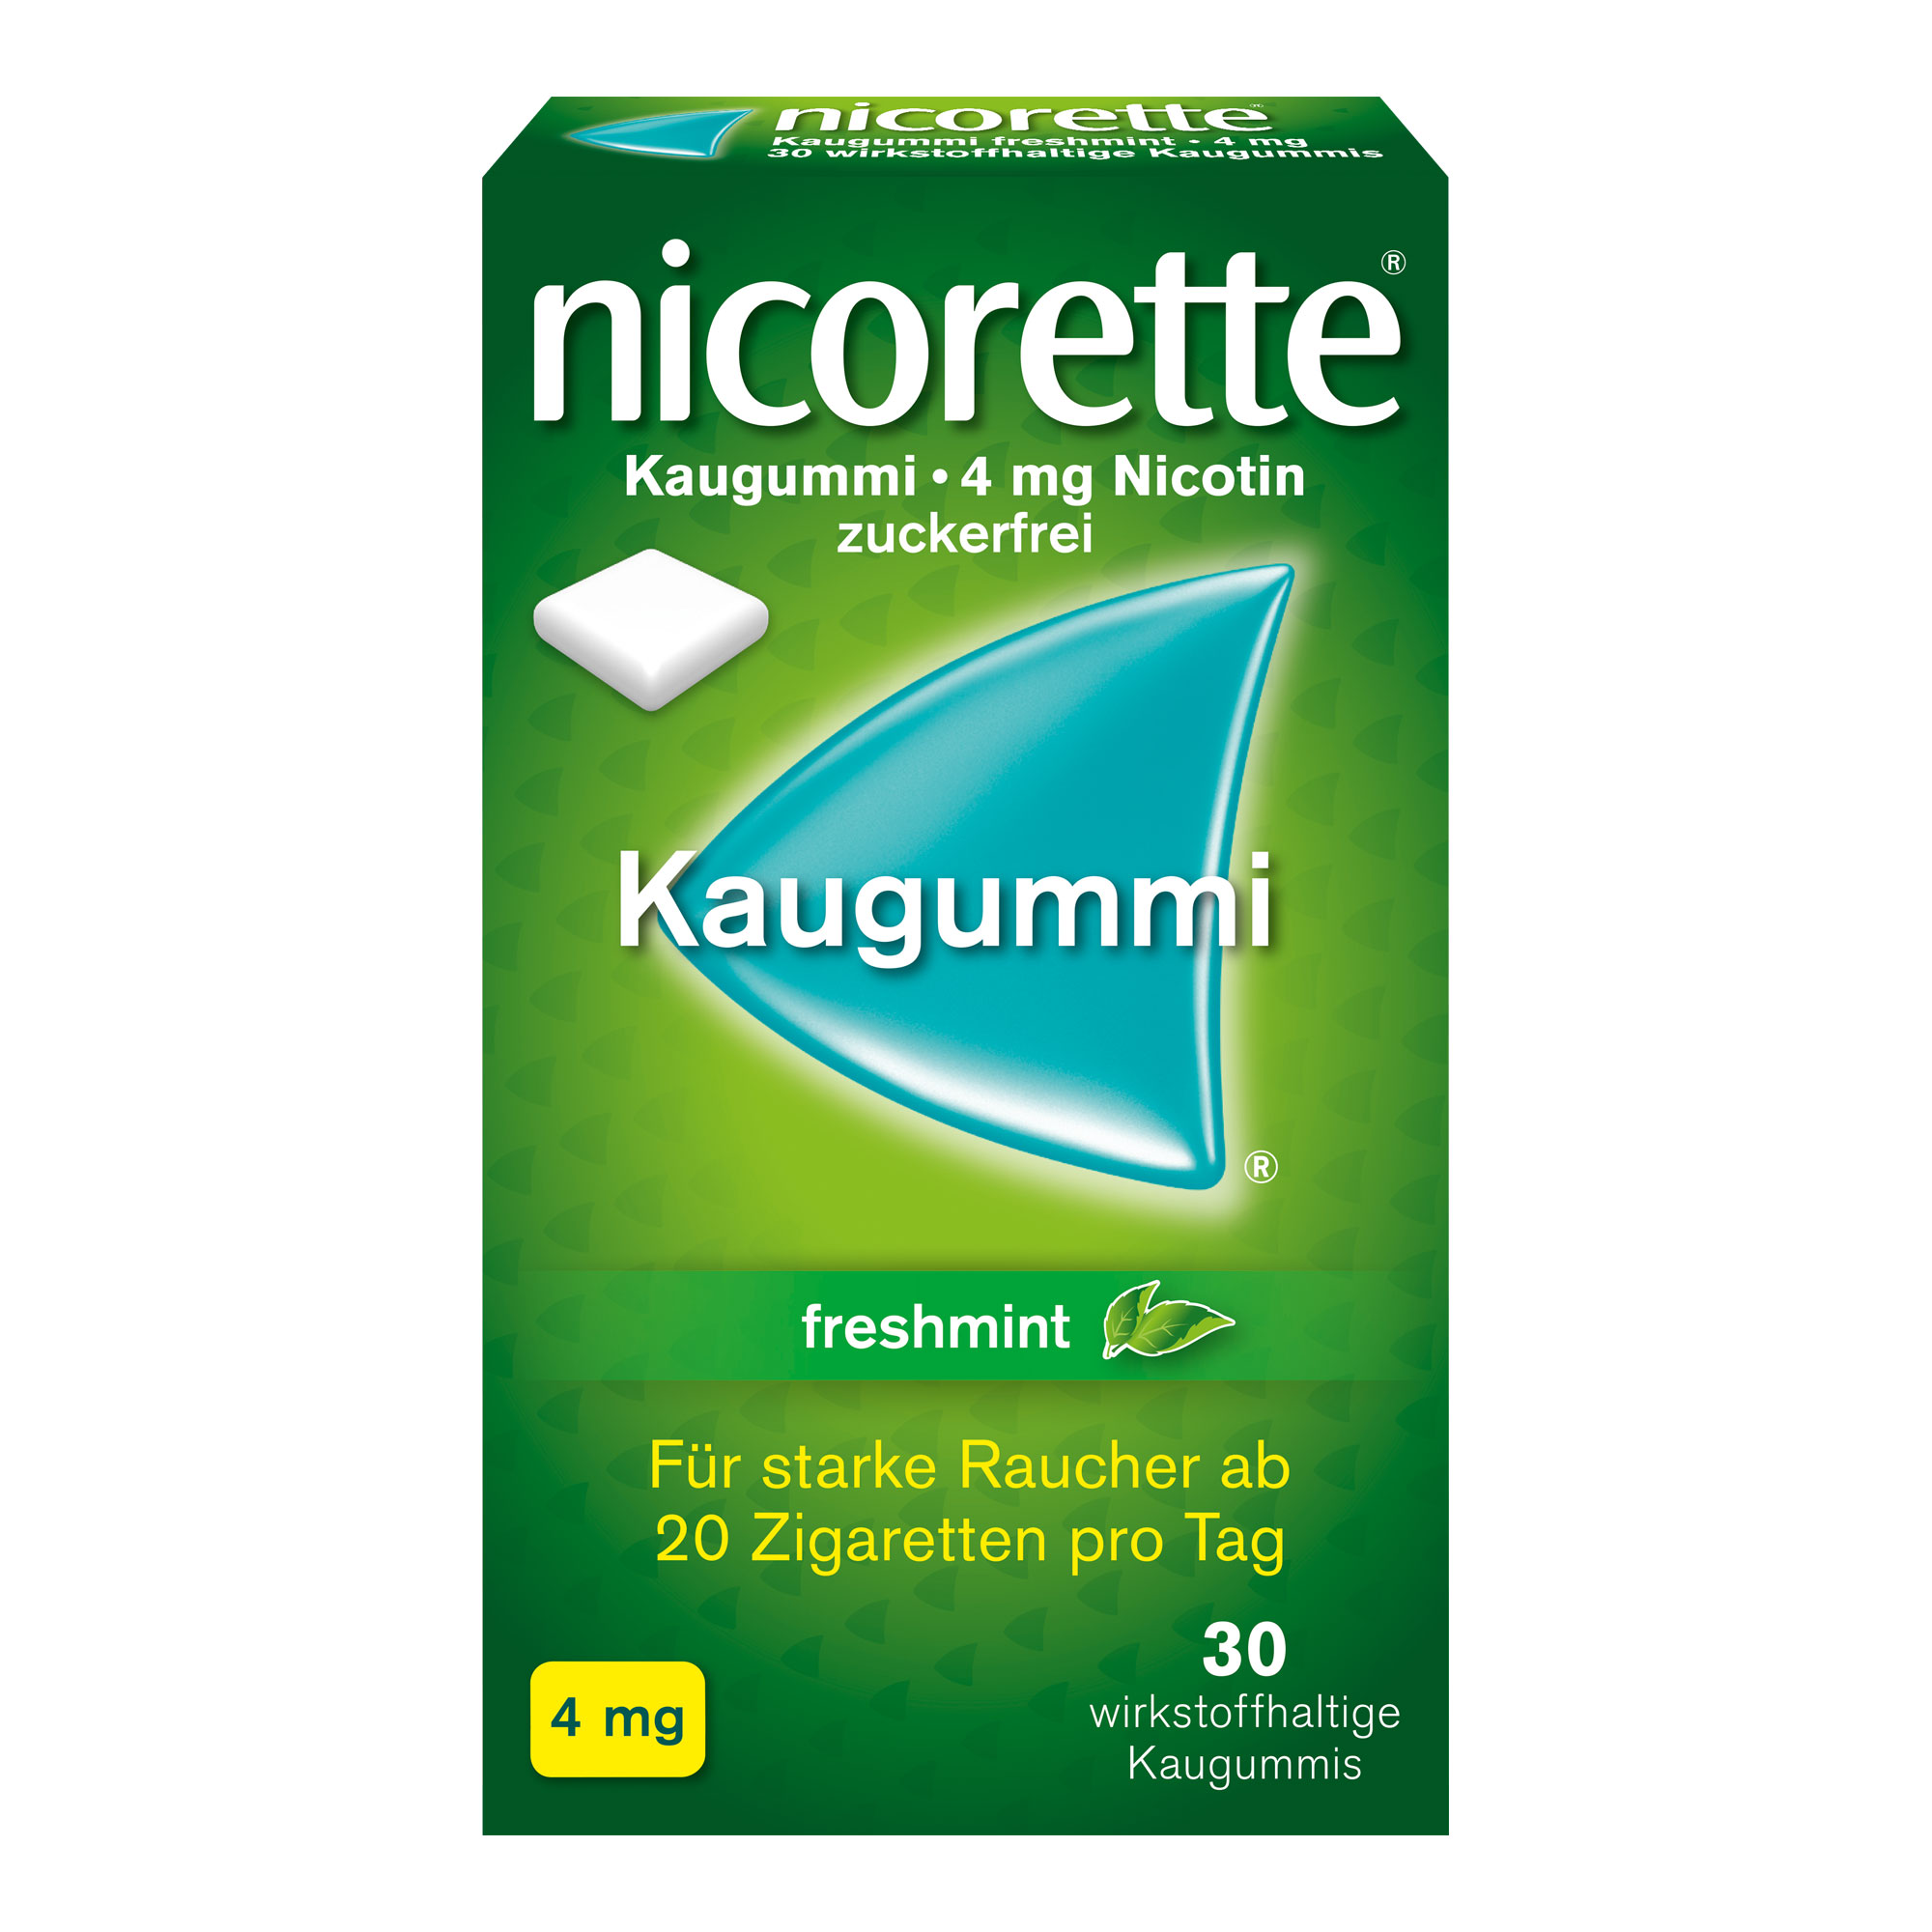 nicorette® Kaugummi freshmint mit 4 mg Nikotin lindert Rauchverlangen und Entzugssymptome, wie innere Unruhe und gesteigerten Appetit während der Raucherentwöhnung. Mit Pfefferminzgeschmack.